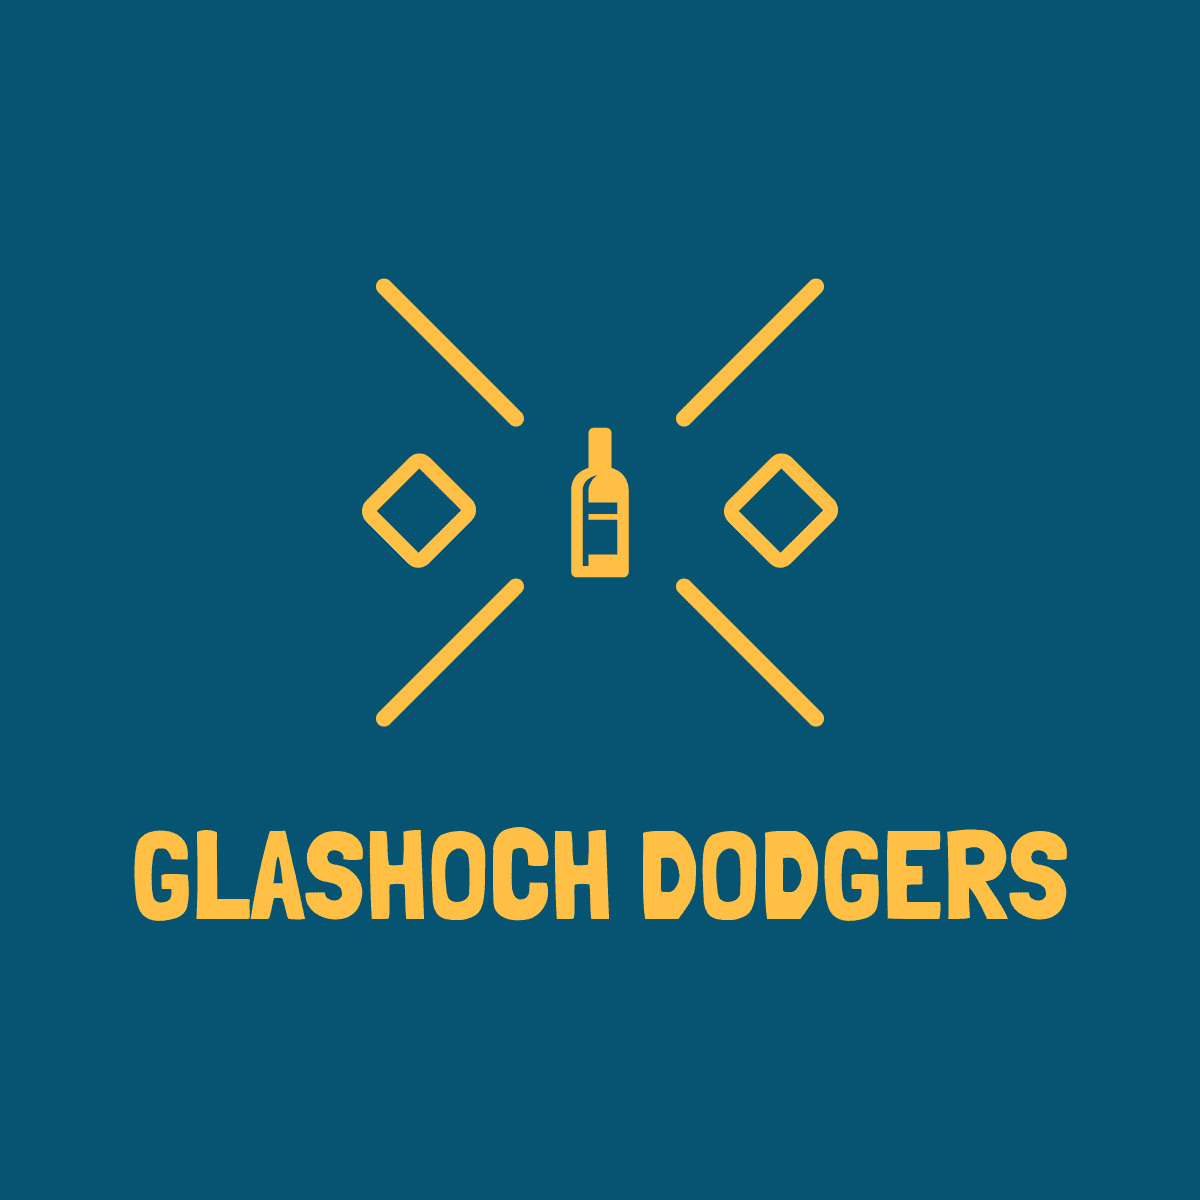 Glashoch Dodgers